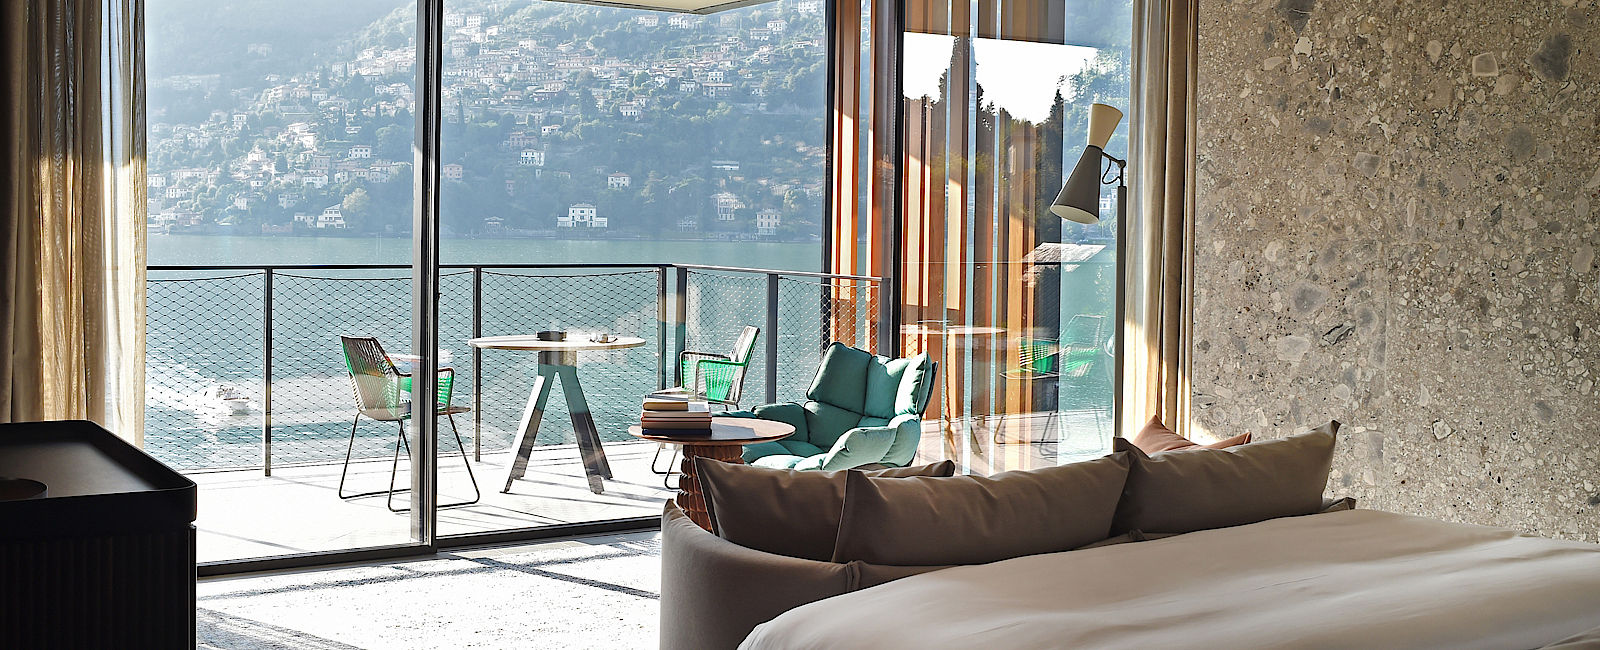 HOTEL TIPPS
 Il Sereno Lago di Como 
  